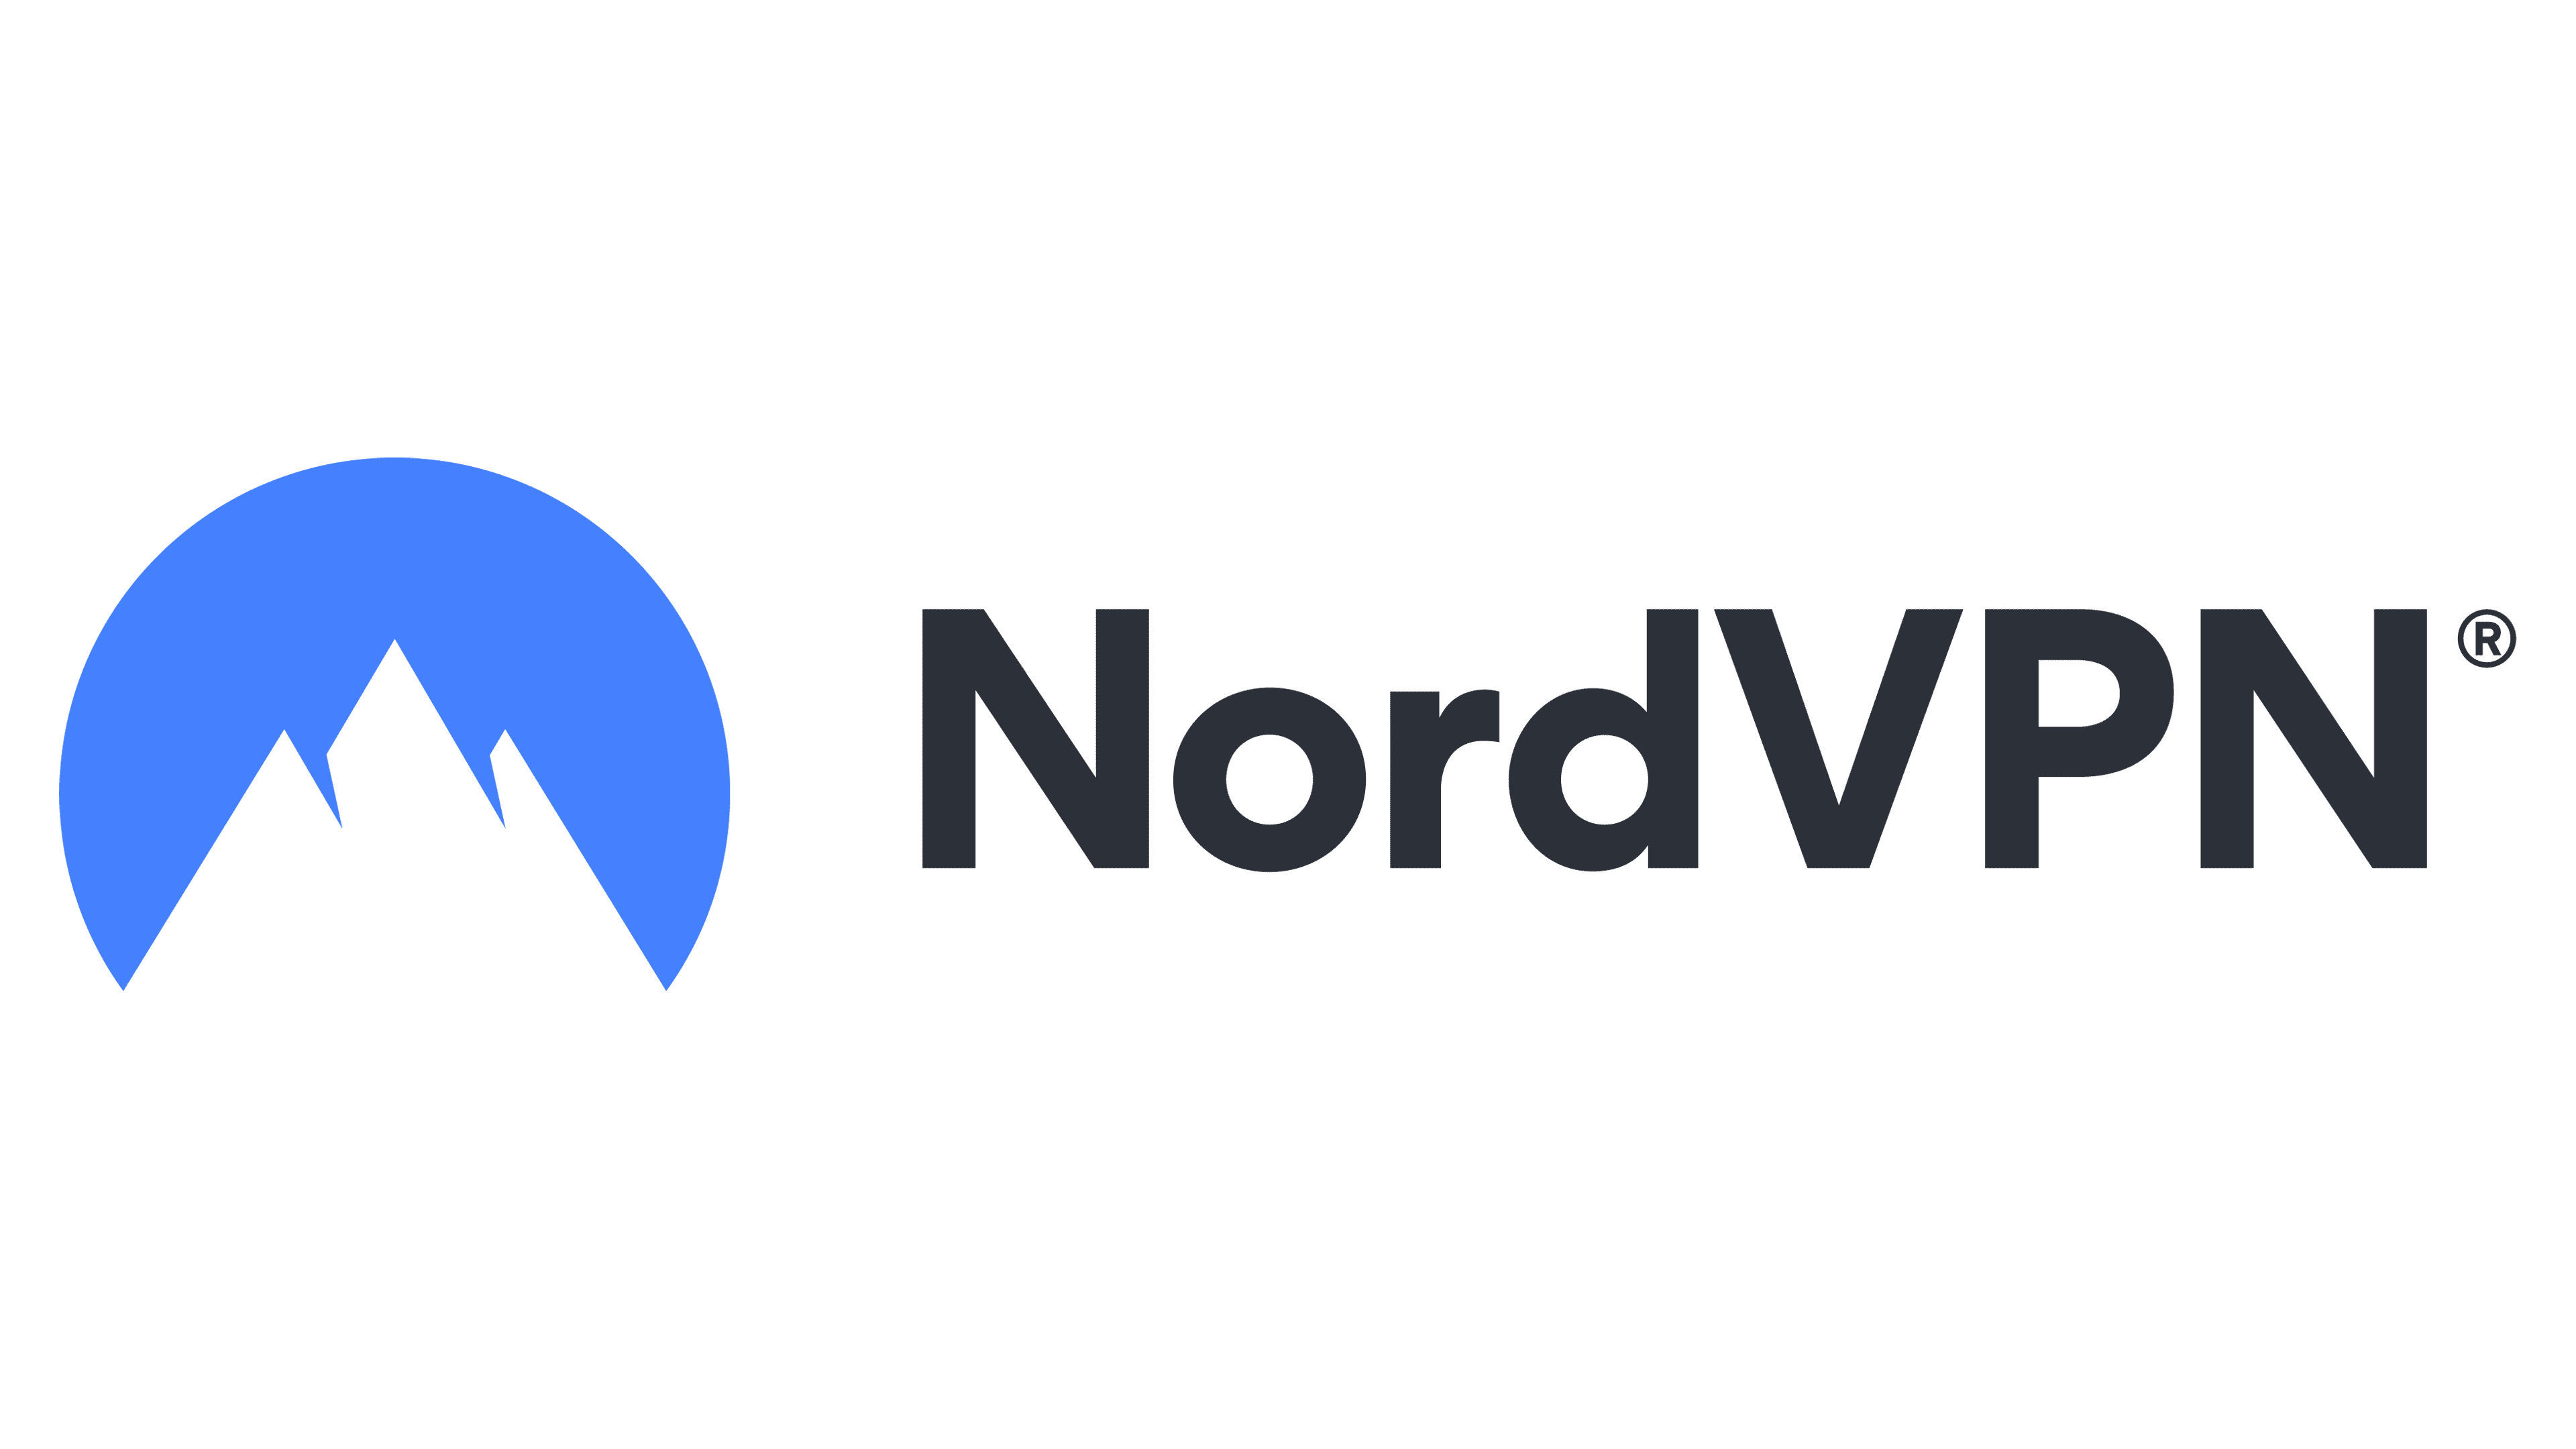 NordVPN for betting